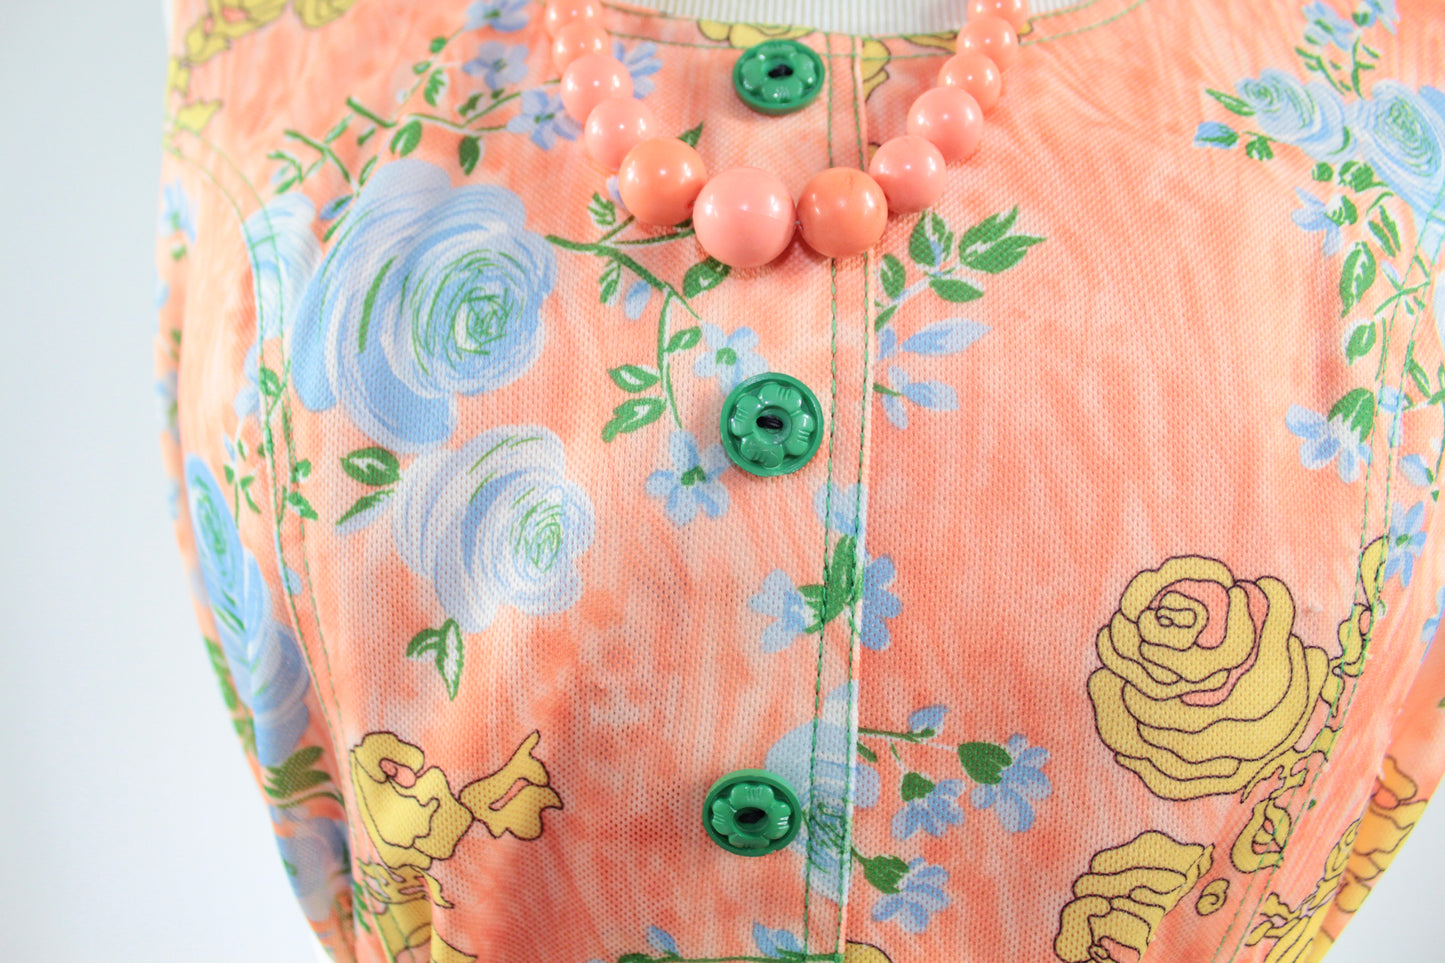 Robe vintage sans manches orange motifs fleurs colorées La friperie vintage